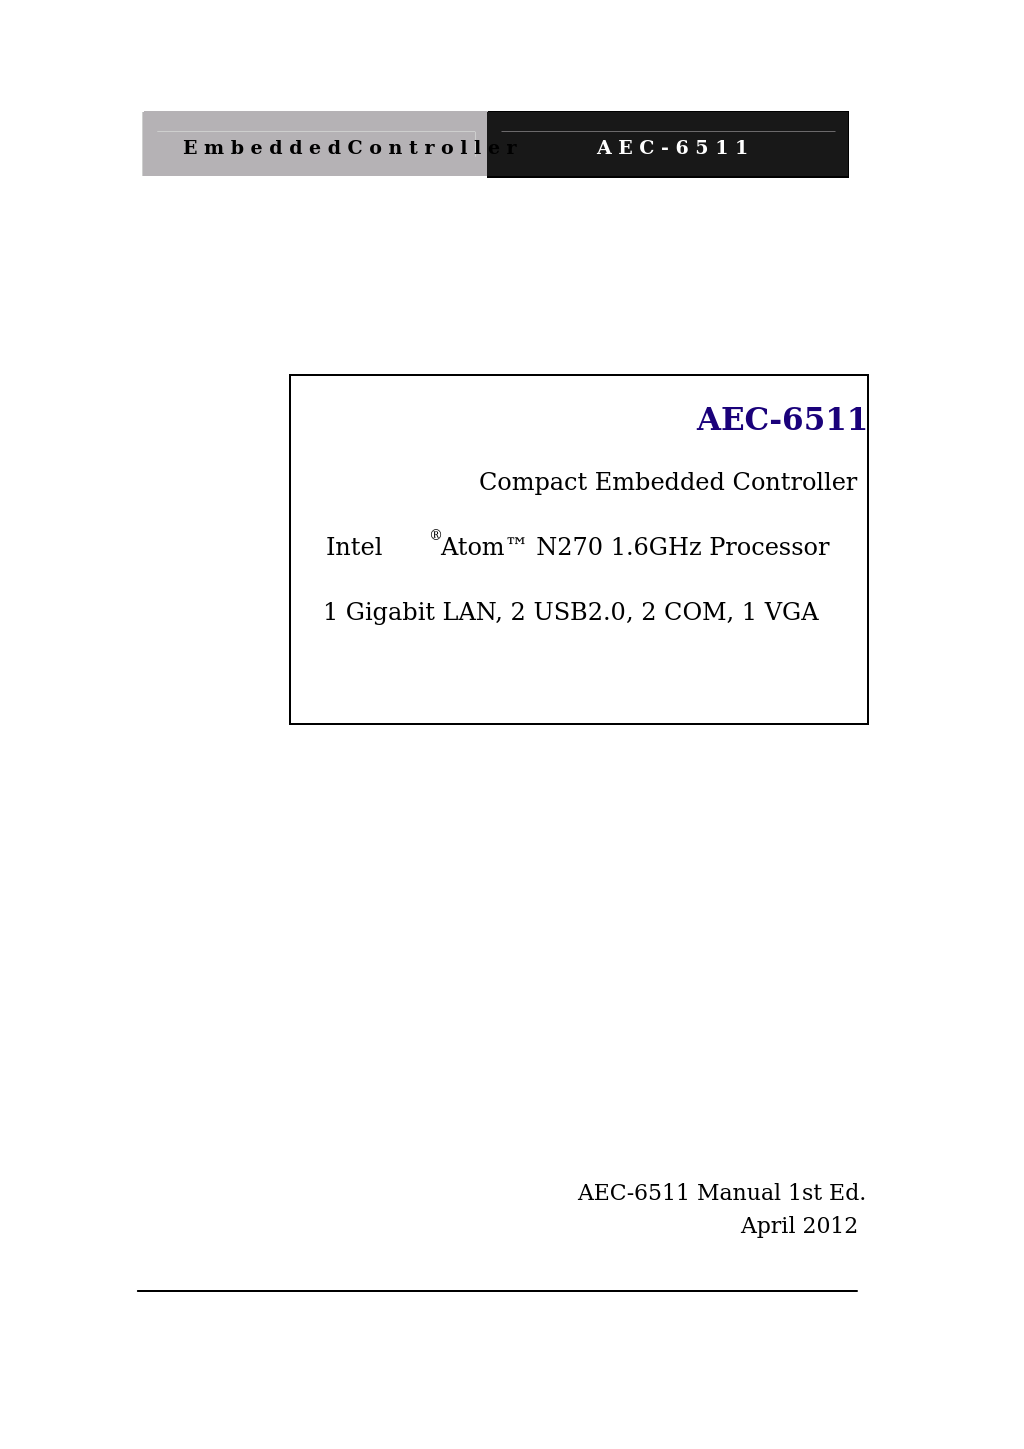 AEC-6511